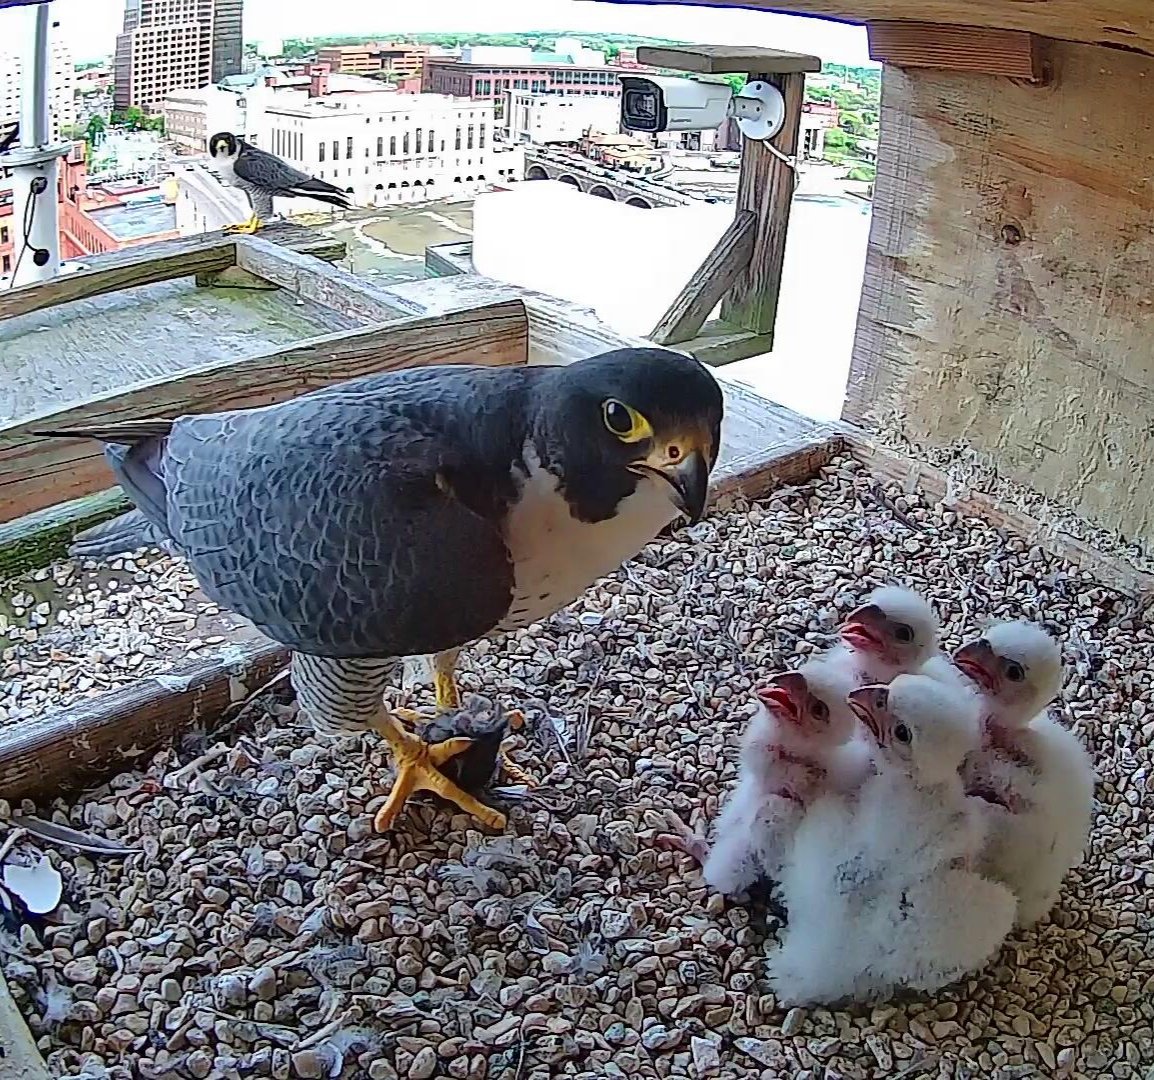 The Rochester falcon family together! cp
#ROC #peregrine #falcon